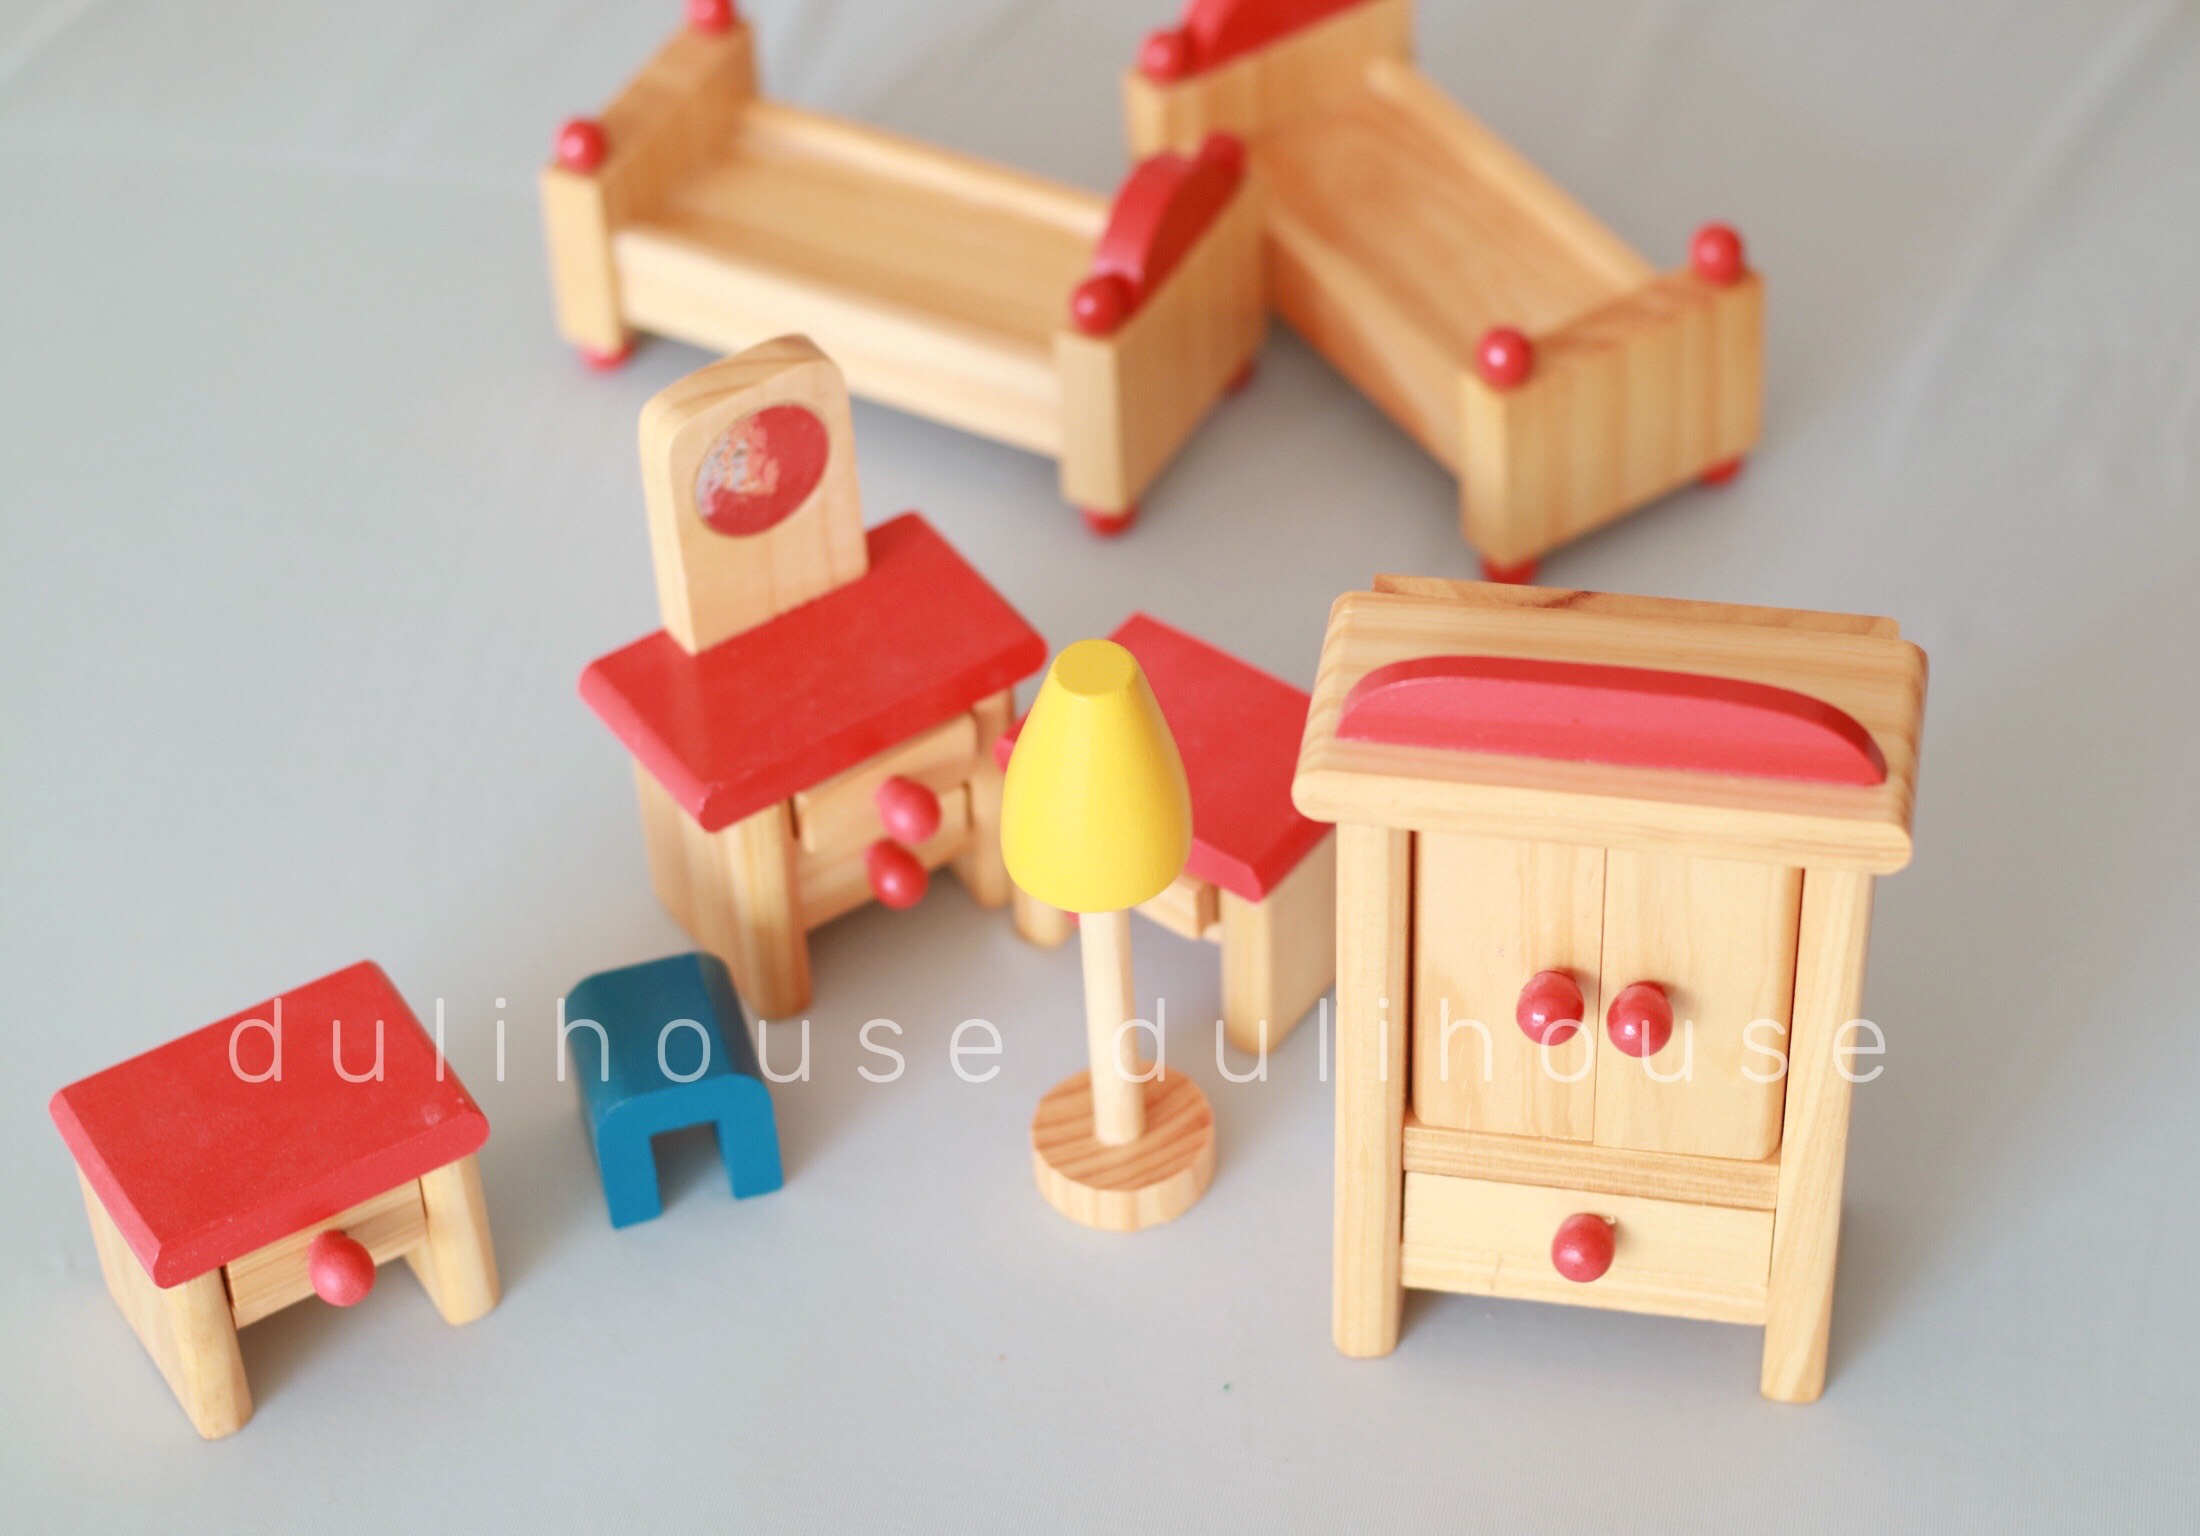 Đồ chơi gỗ cao cấp Phòng ngủ ba mẹ - Hỗ trợ khả năng nhận biết các đồ vật, tăng khả năng tư duy sáng tạo trong việc sắp xếp, sản xuất tại Việt Nam